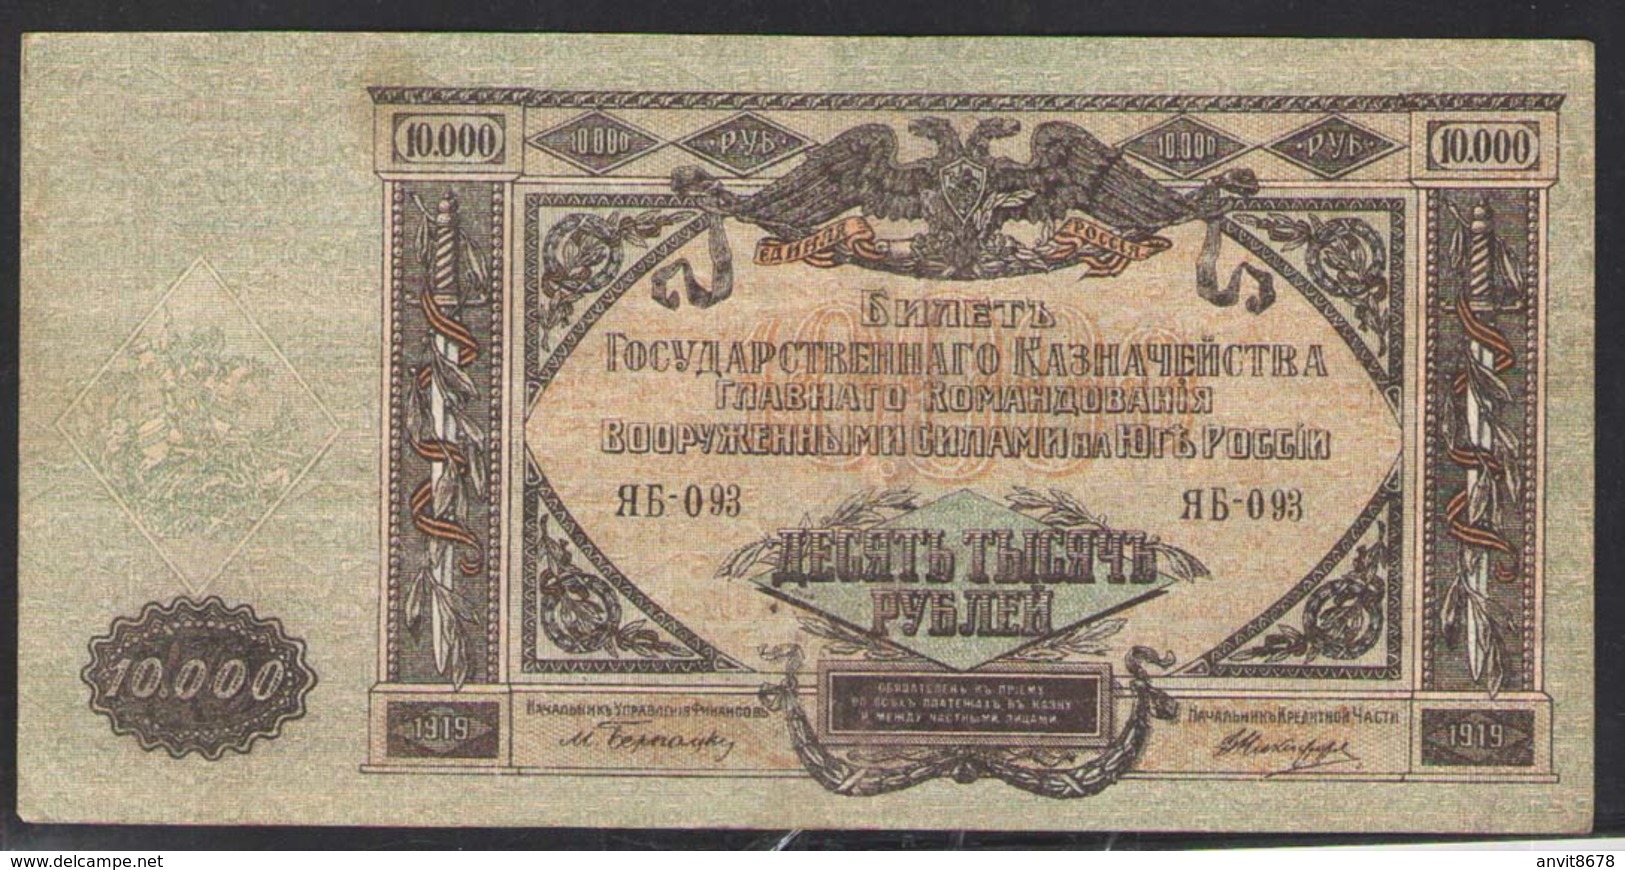 10000 руб   СЕРИЯ ЯБ-093  1919 - Russland